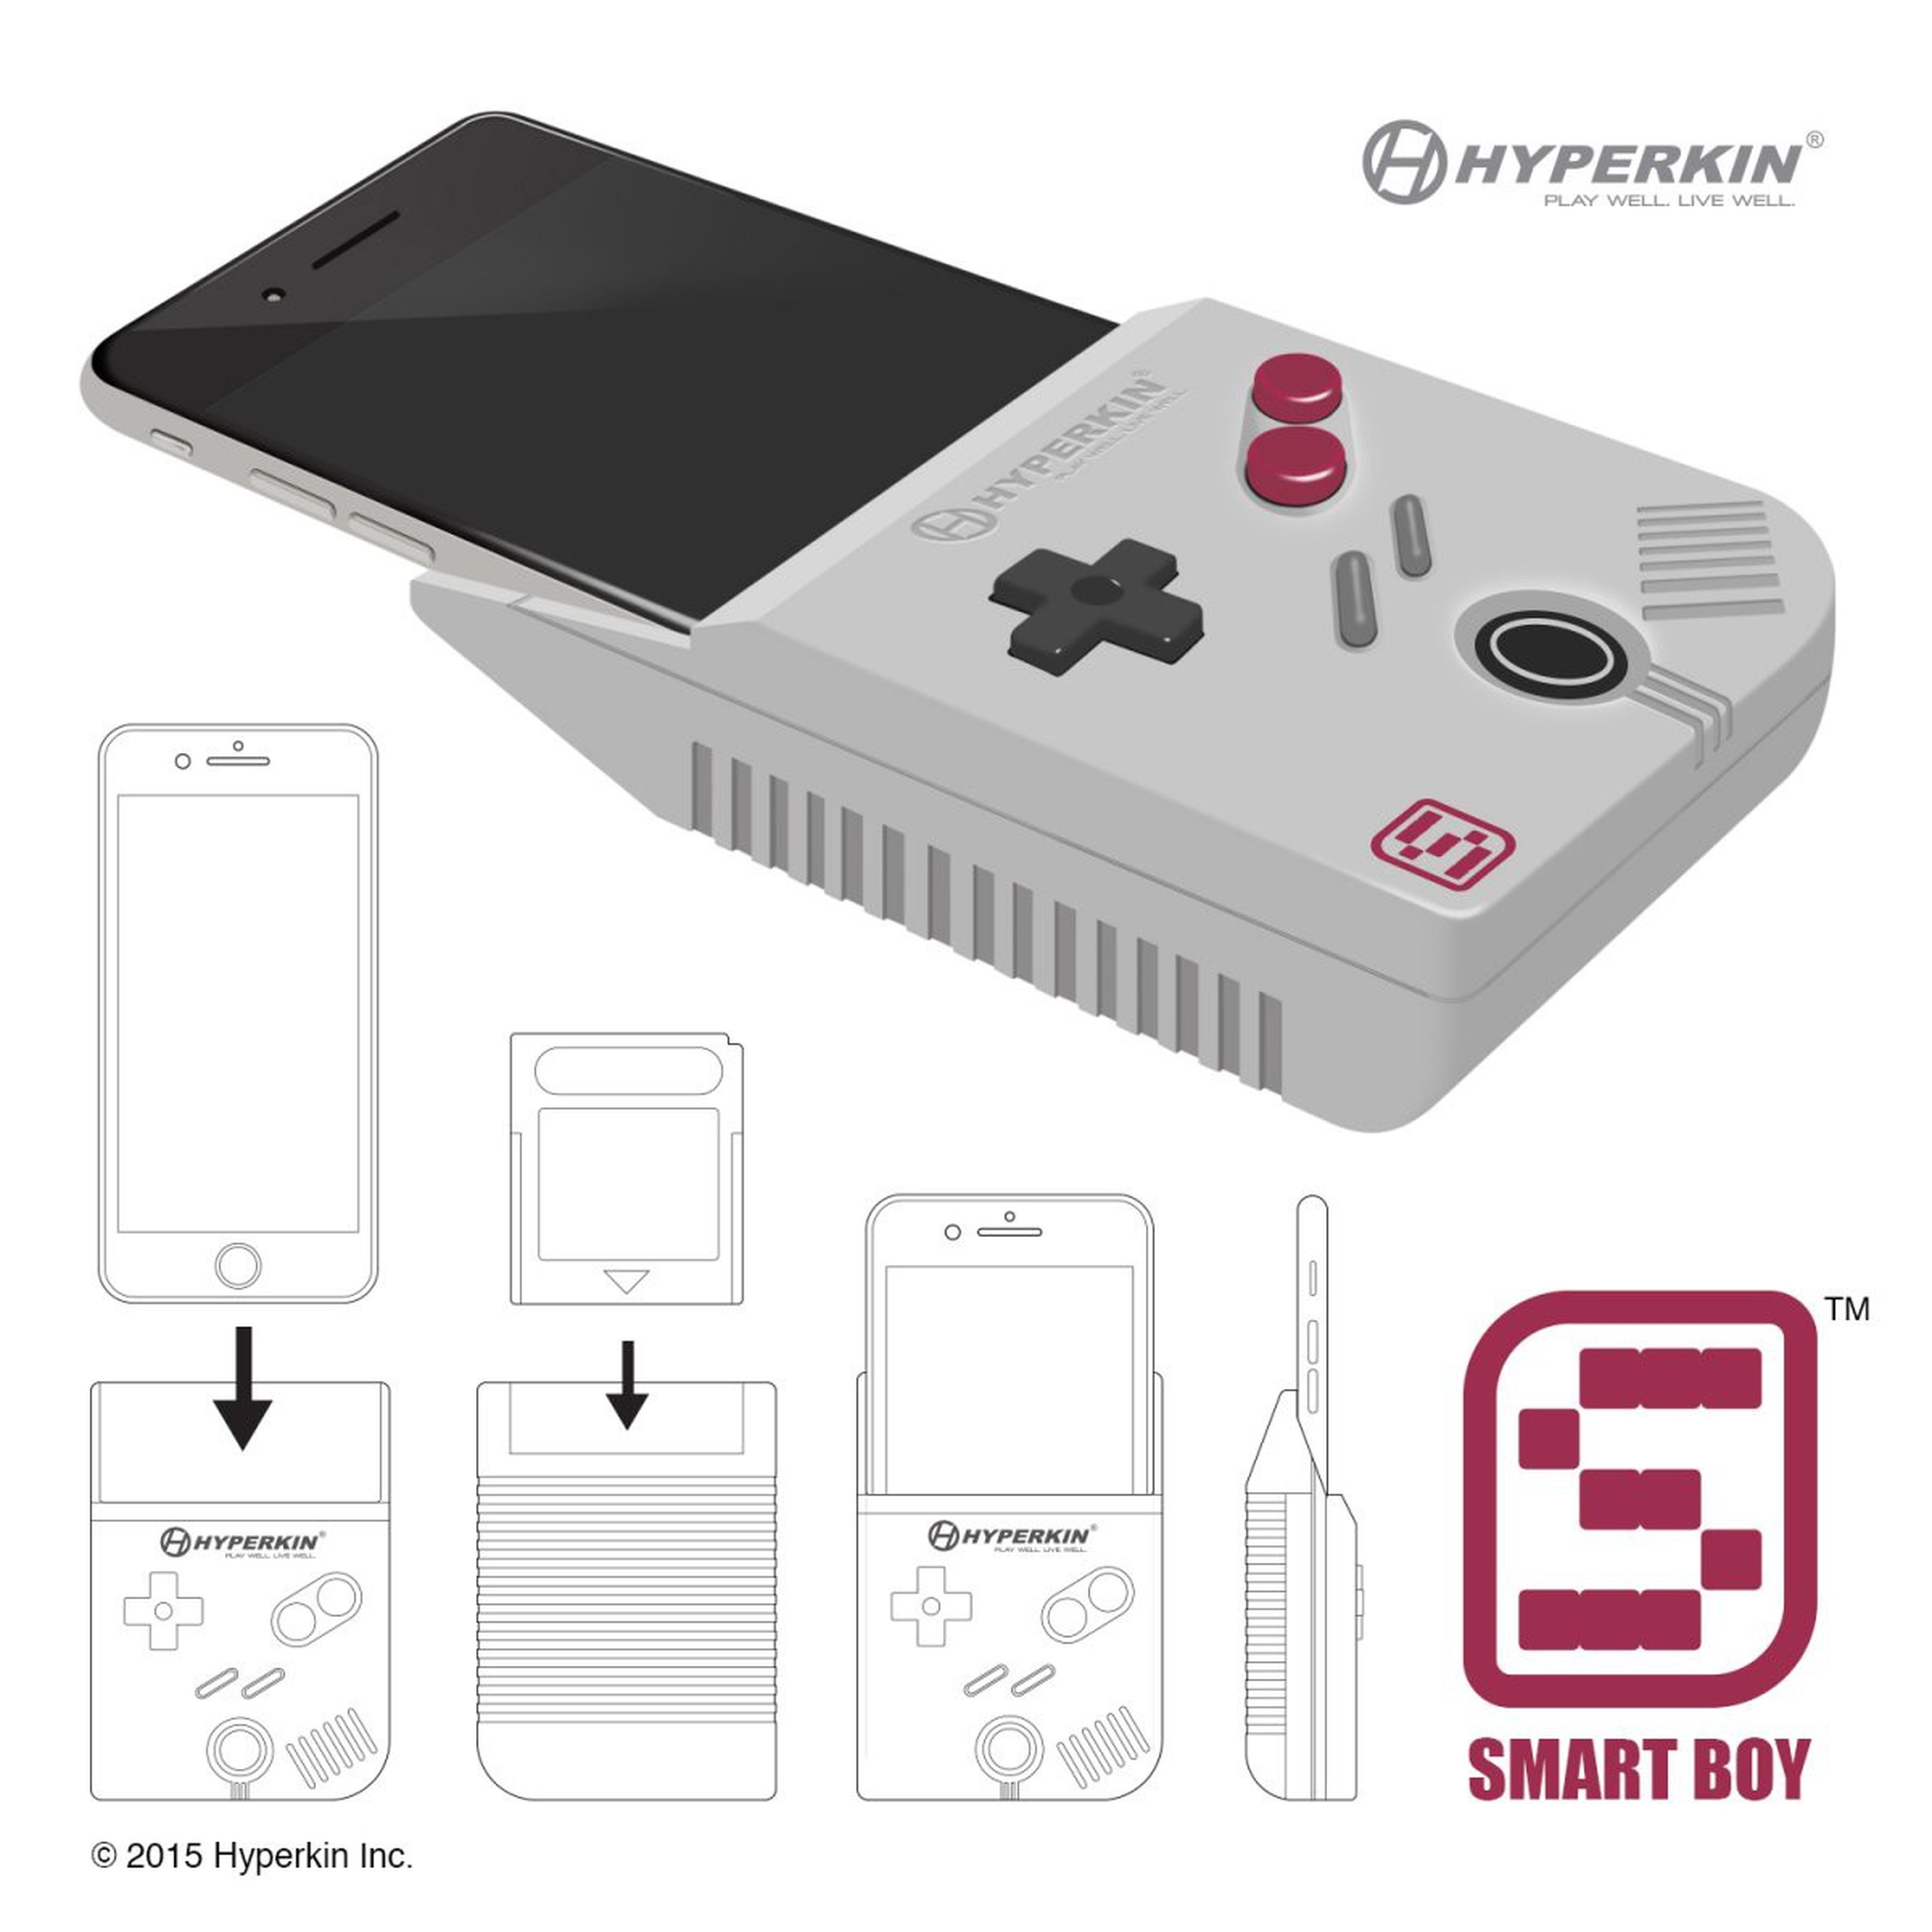 Smart Boy - Transforma tu smartphone en una Game Boy